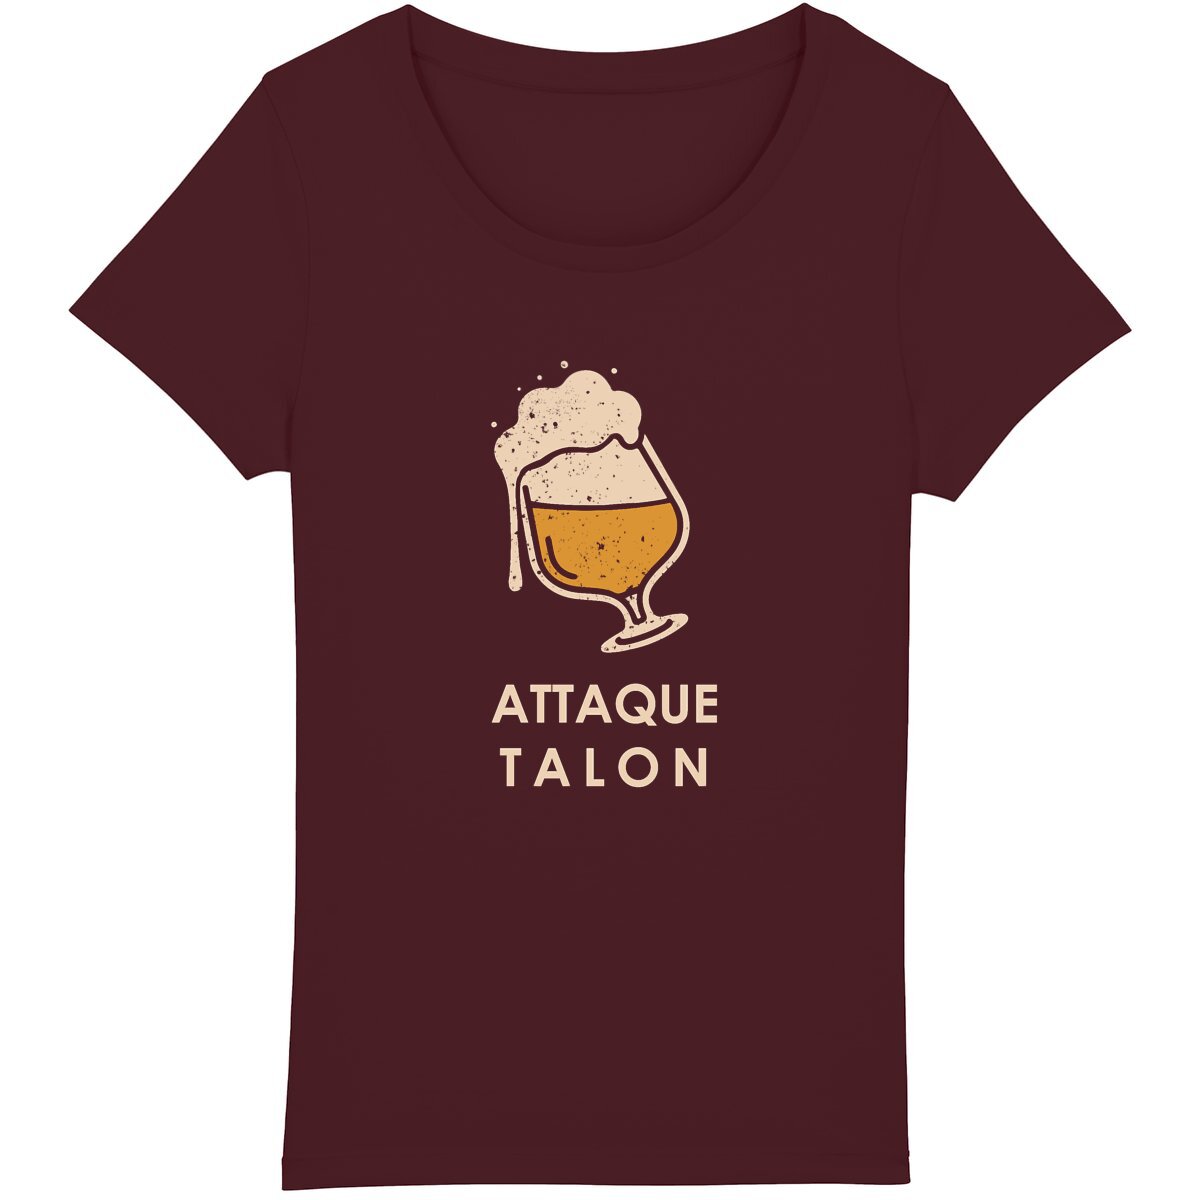 T-shirt de trail pour femme combinant humour et engagement écologique